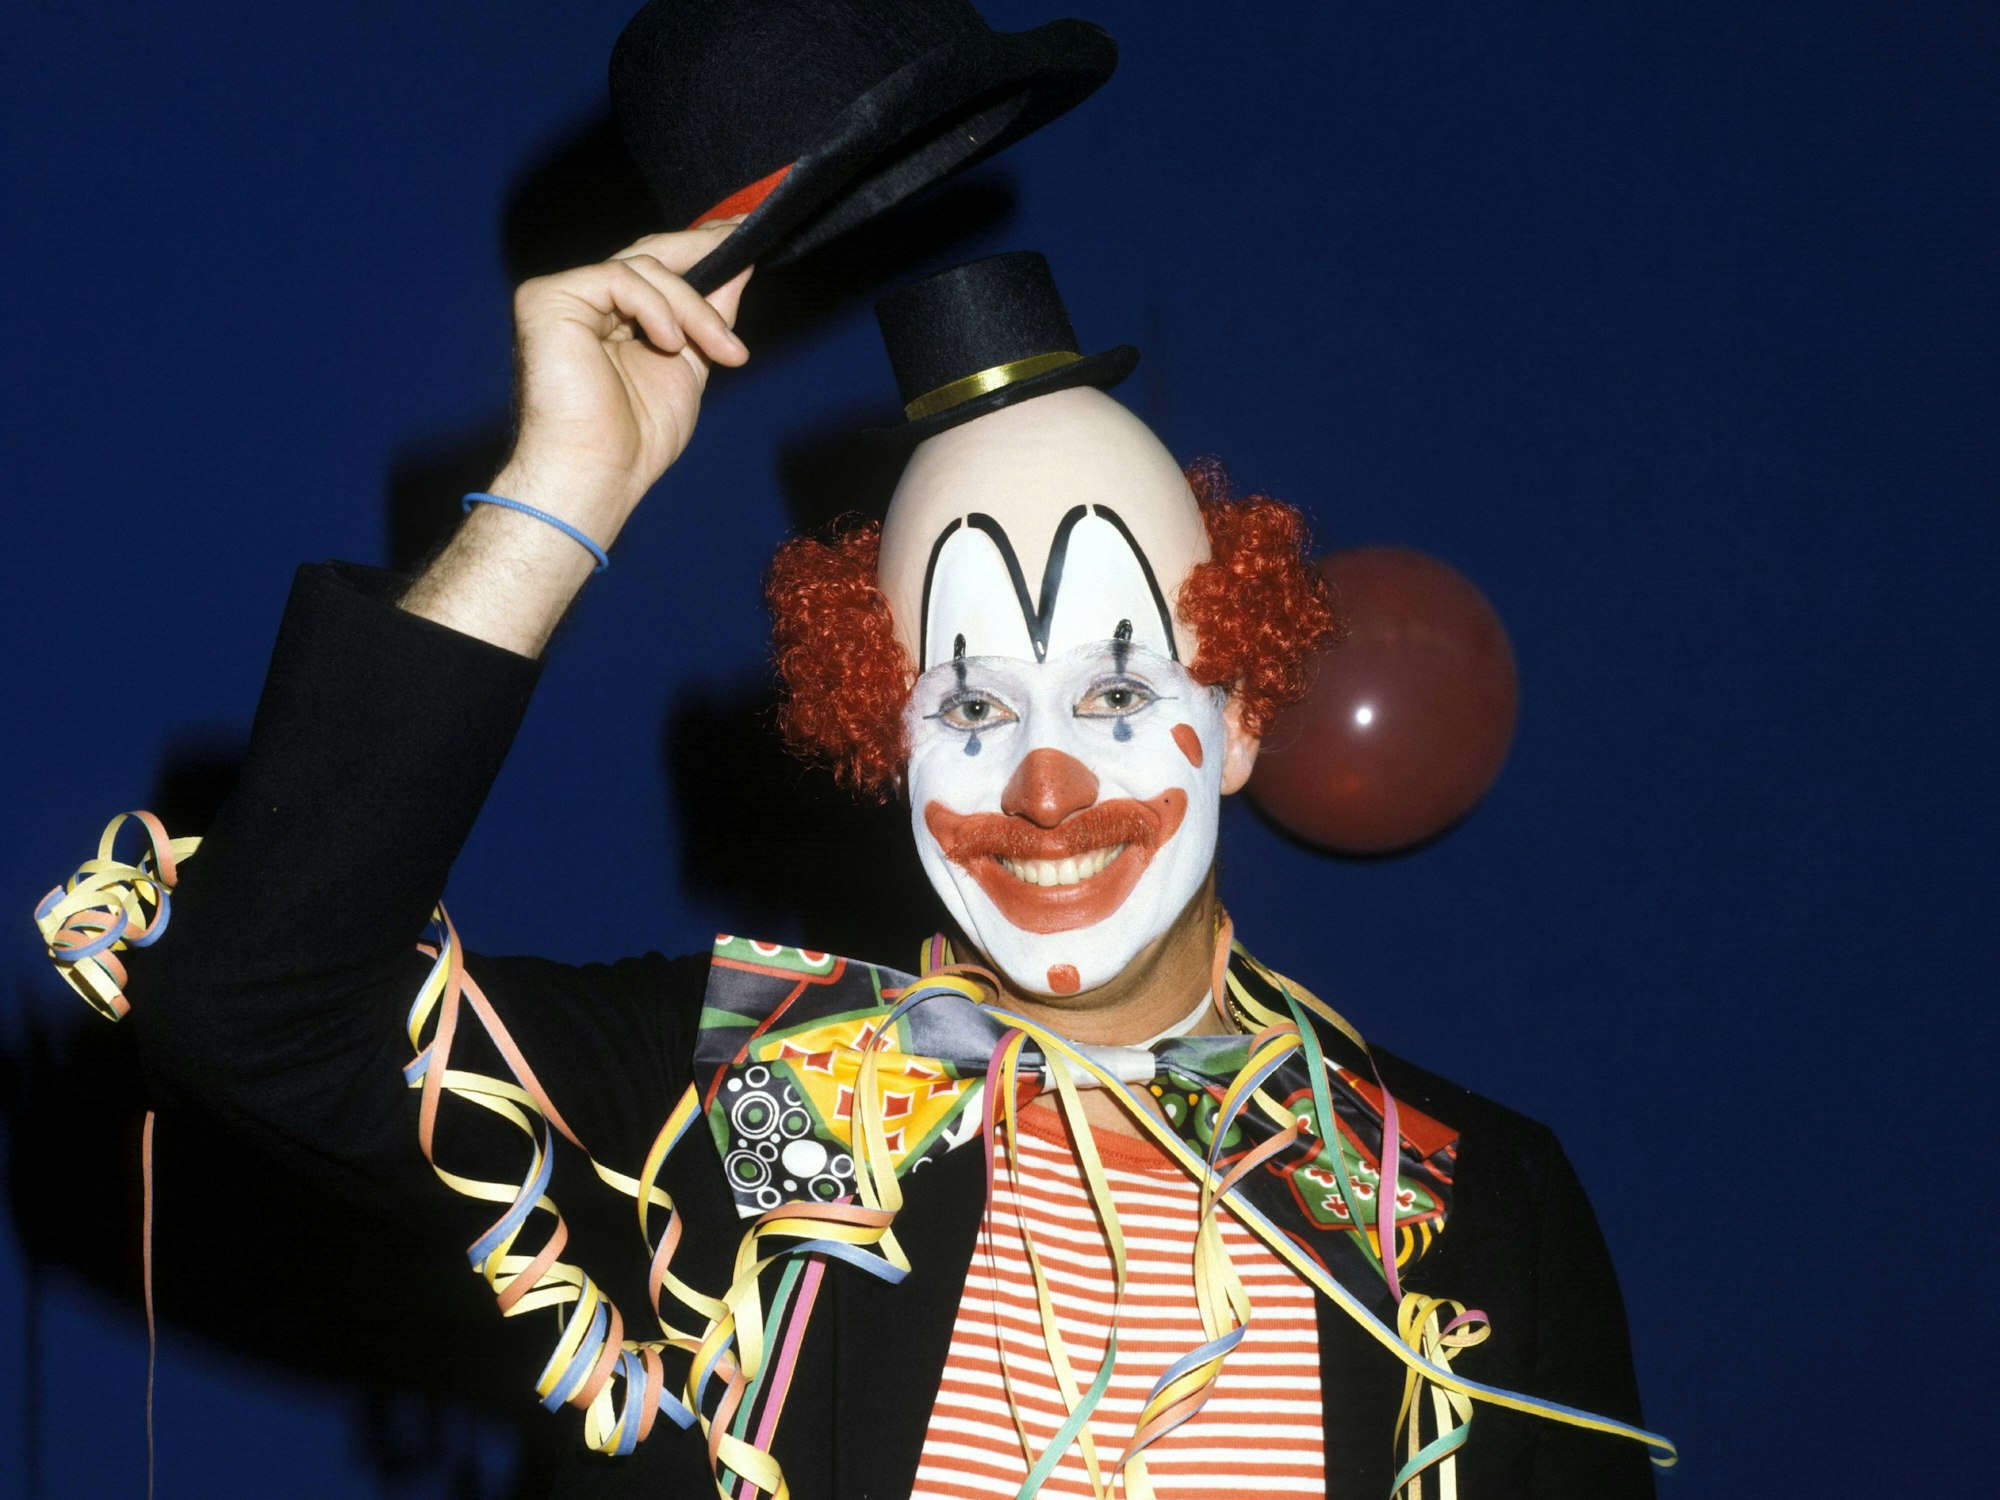 Toni Schumacher an Karneval als Clown verkleidet.